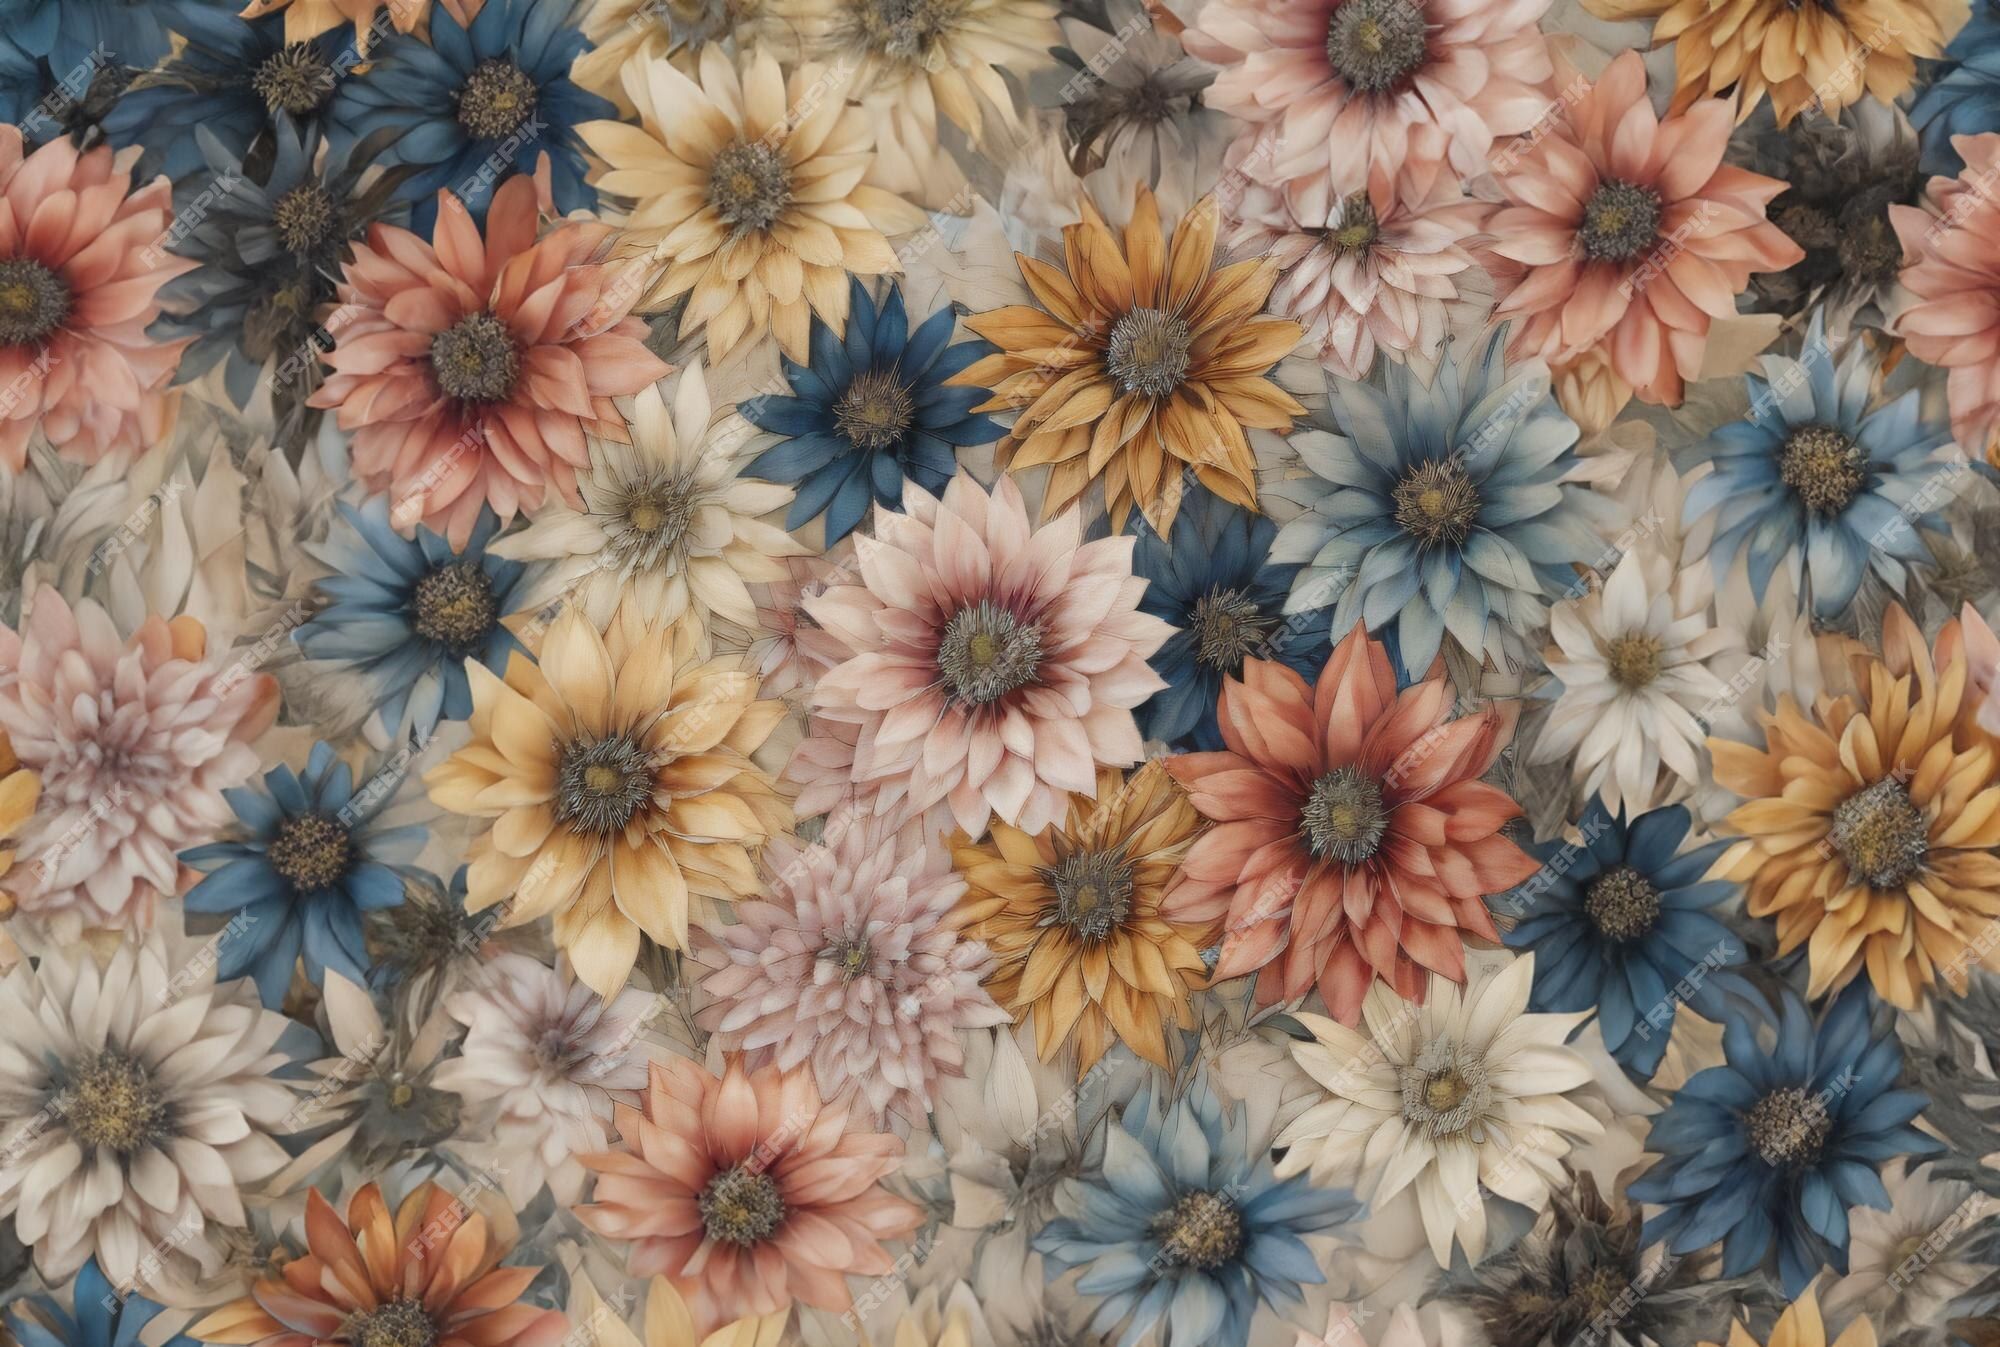  Gemalte Blumen Hintergrundbild 2000x1347. Eine steppdecke mit blumen darauf